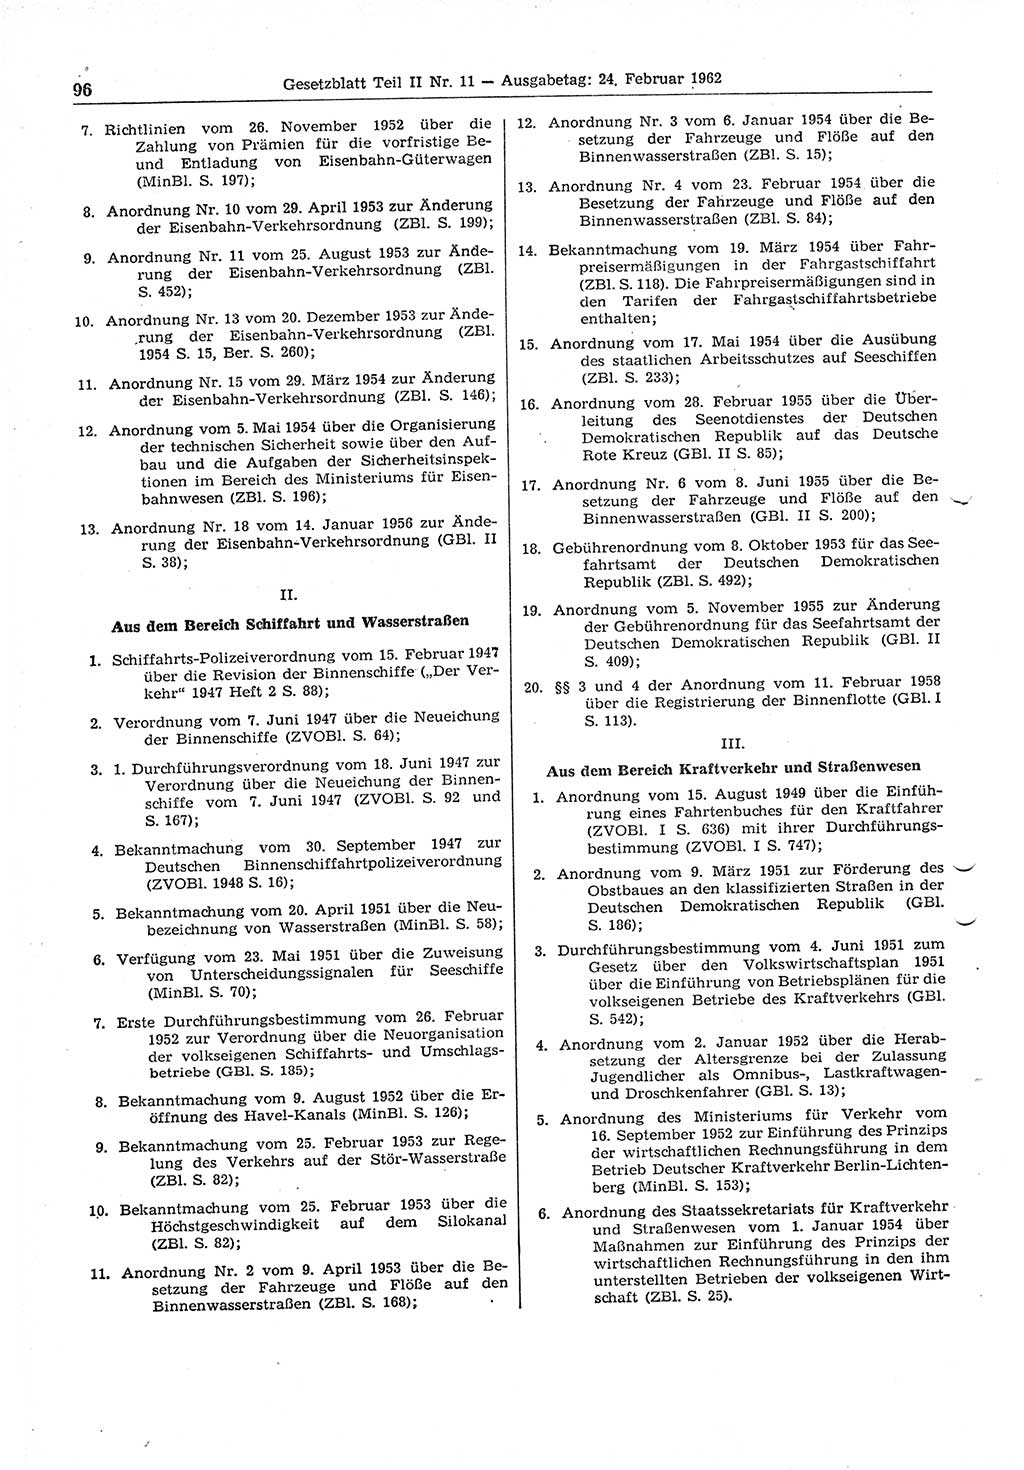 Gesetzblatt (GBl.) der Deutschen Demokratischen Republik (DDR) Teil ⅠⅠ 1962, Seite 96 (GBl. DDR ⅠⅠ 1962, S. 96)